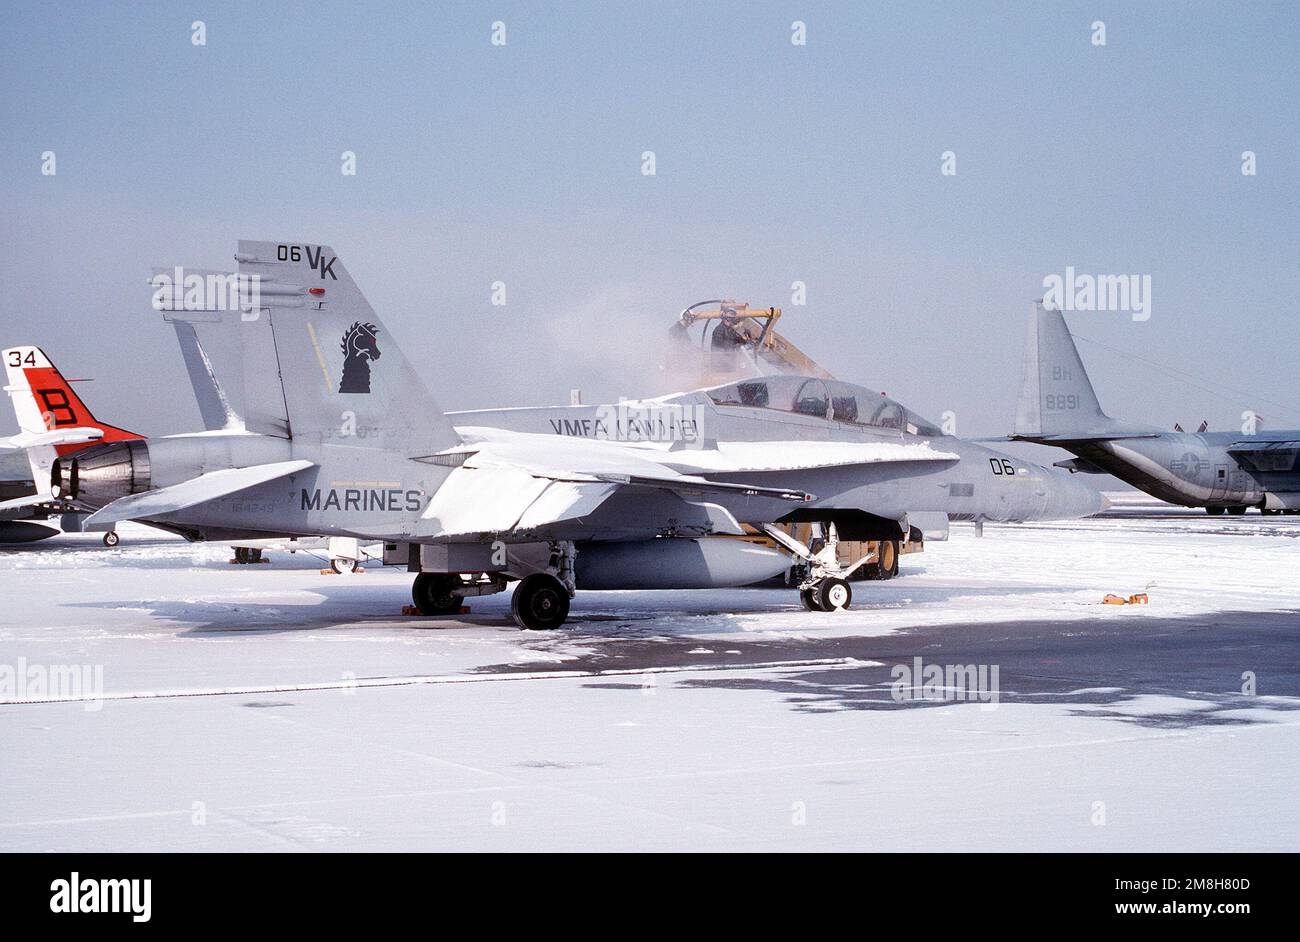 Un aéronef de combat maritime 121 (VMFA(AW)-121) F/A-18D Hornet est dégelé sur la ligne de vol avant un contrôle en amont. Base: Naval Air Facility, Andrews AFB État: Maryland (MD) pays: Etats-Unis d'Amérique (USA) Banque D'Images